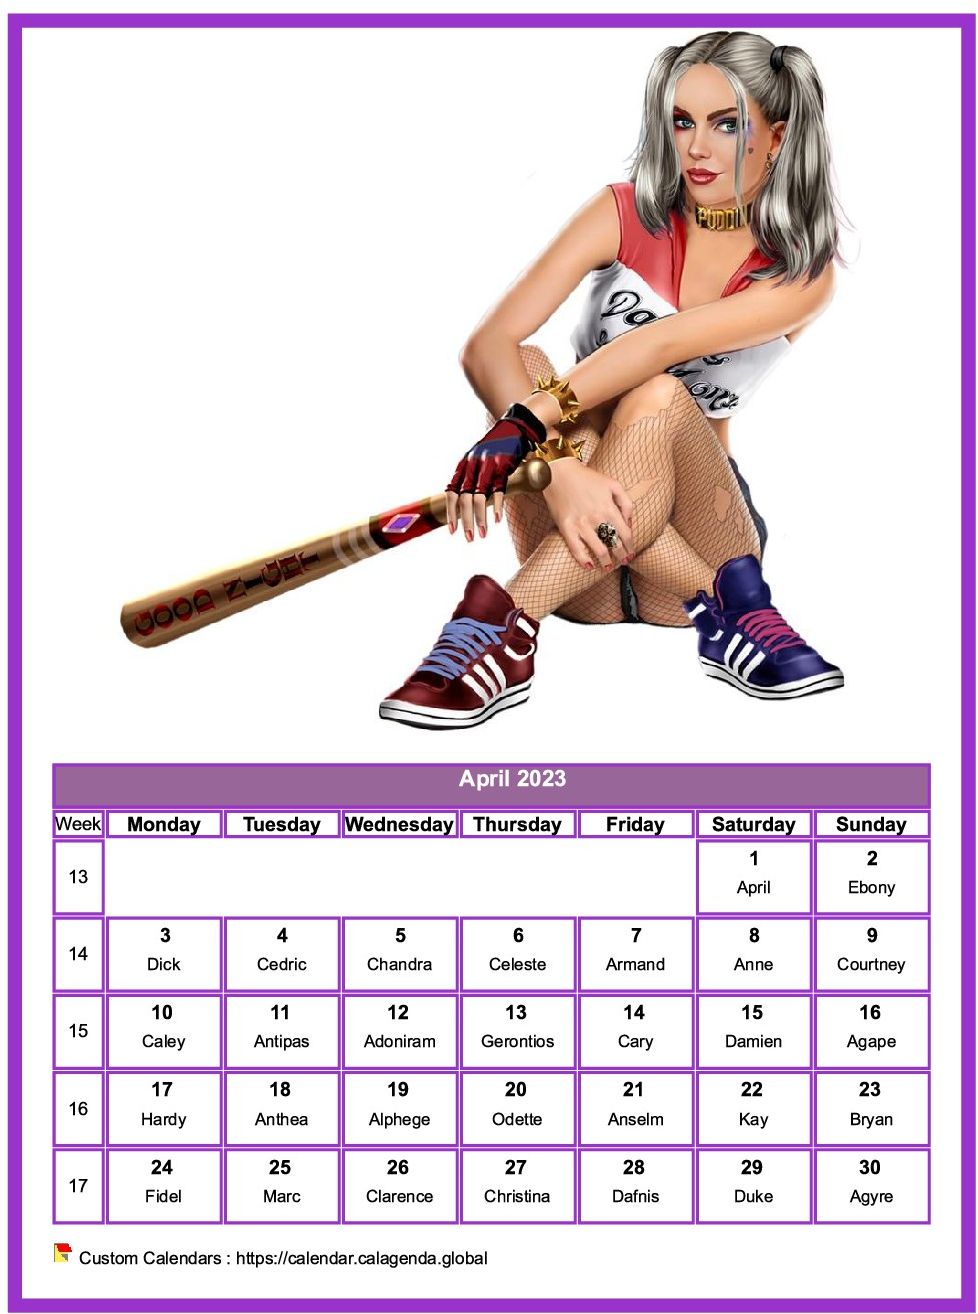 Calendar April 2023 women